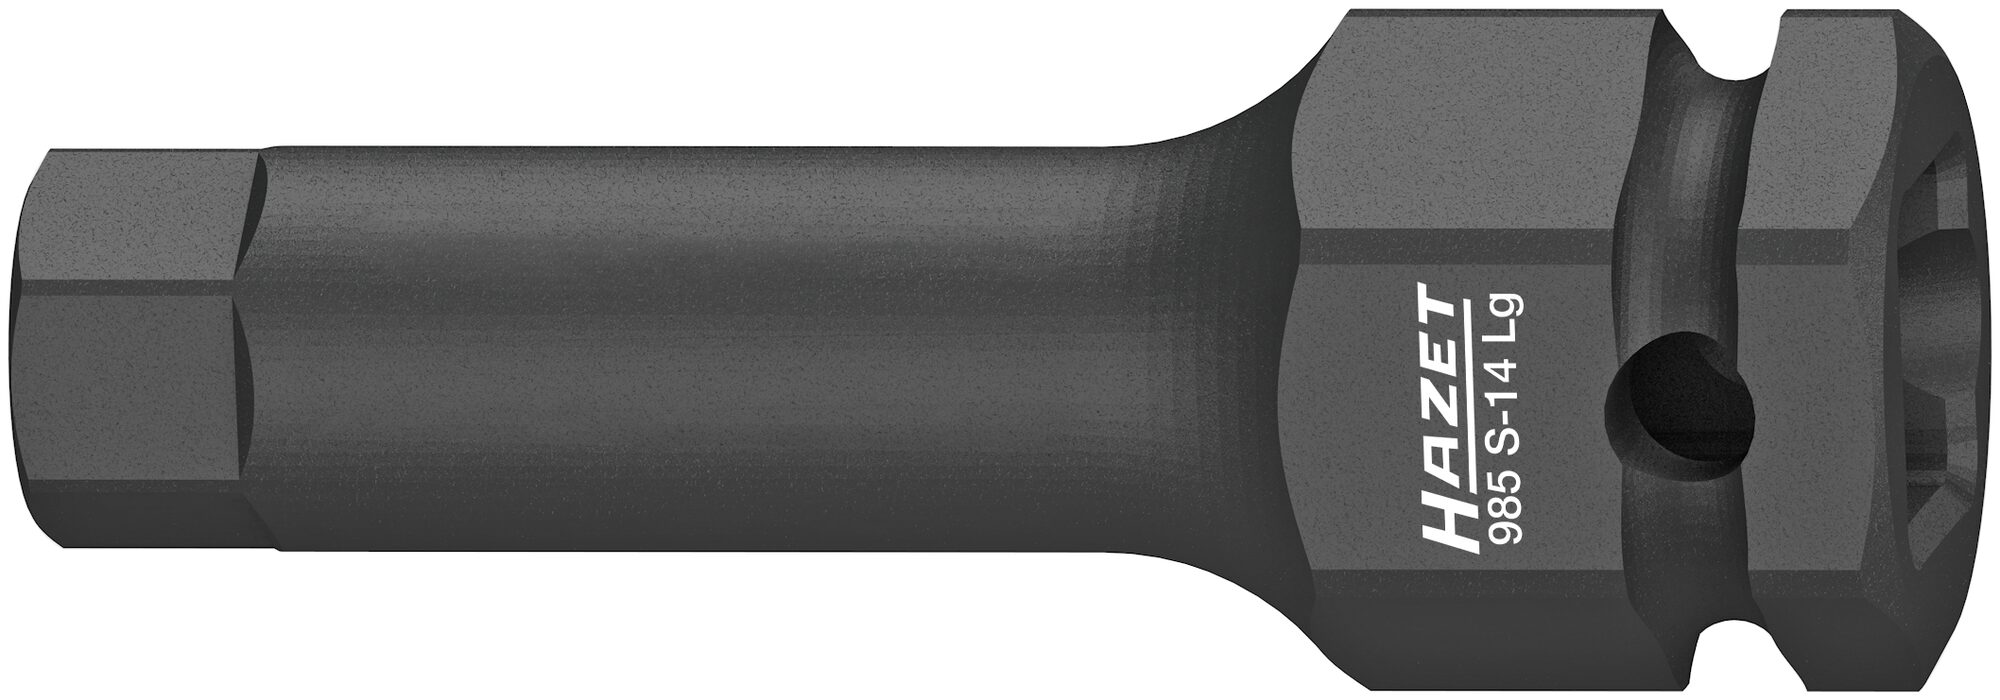 HAZET Schlag-, Maschinenschrauber Schraubendreher-Steckschlüsseleinsatz 985S-14LG · Vierkant hohl 12,5 mm (1/2 Zoll) · Innen Sechskant Profil · 14 mm